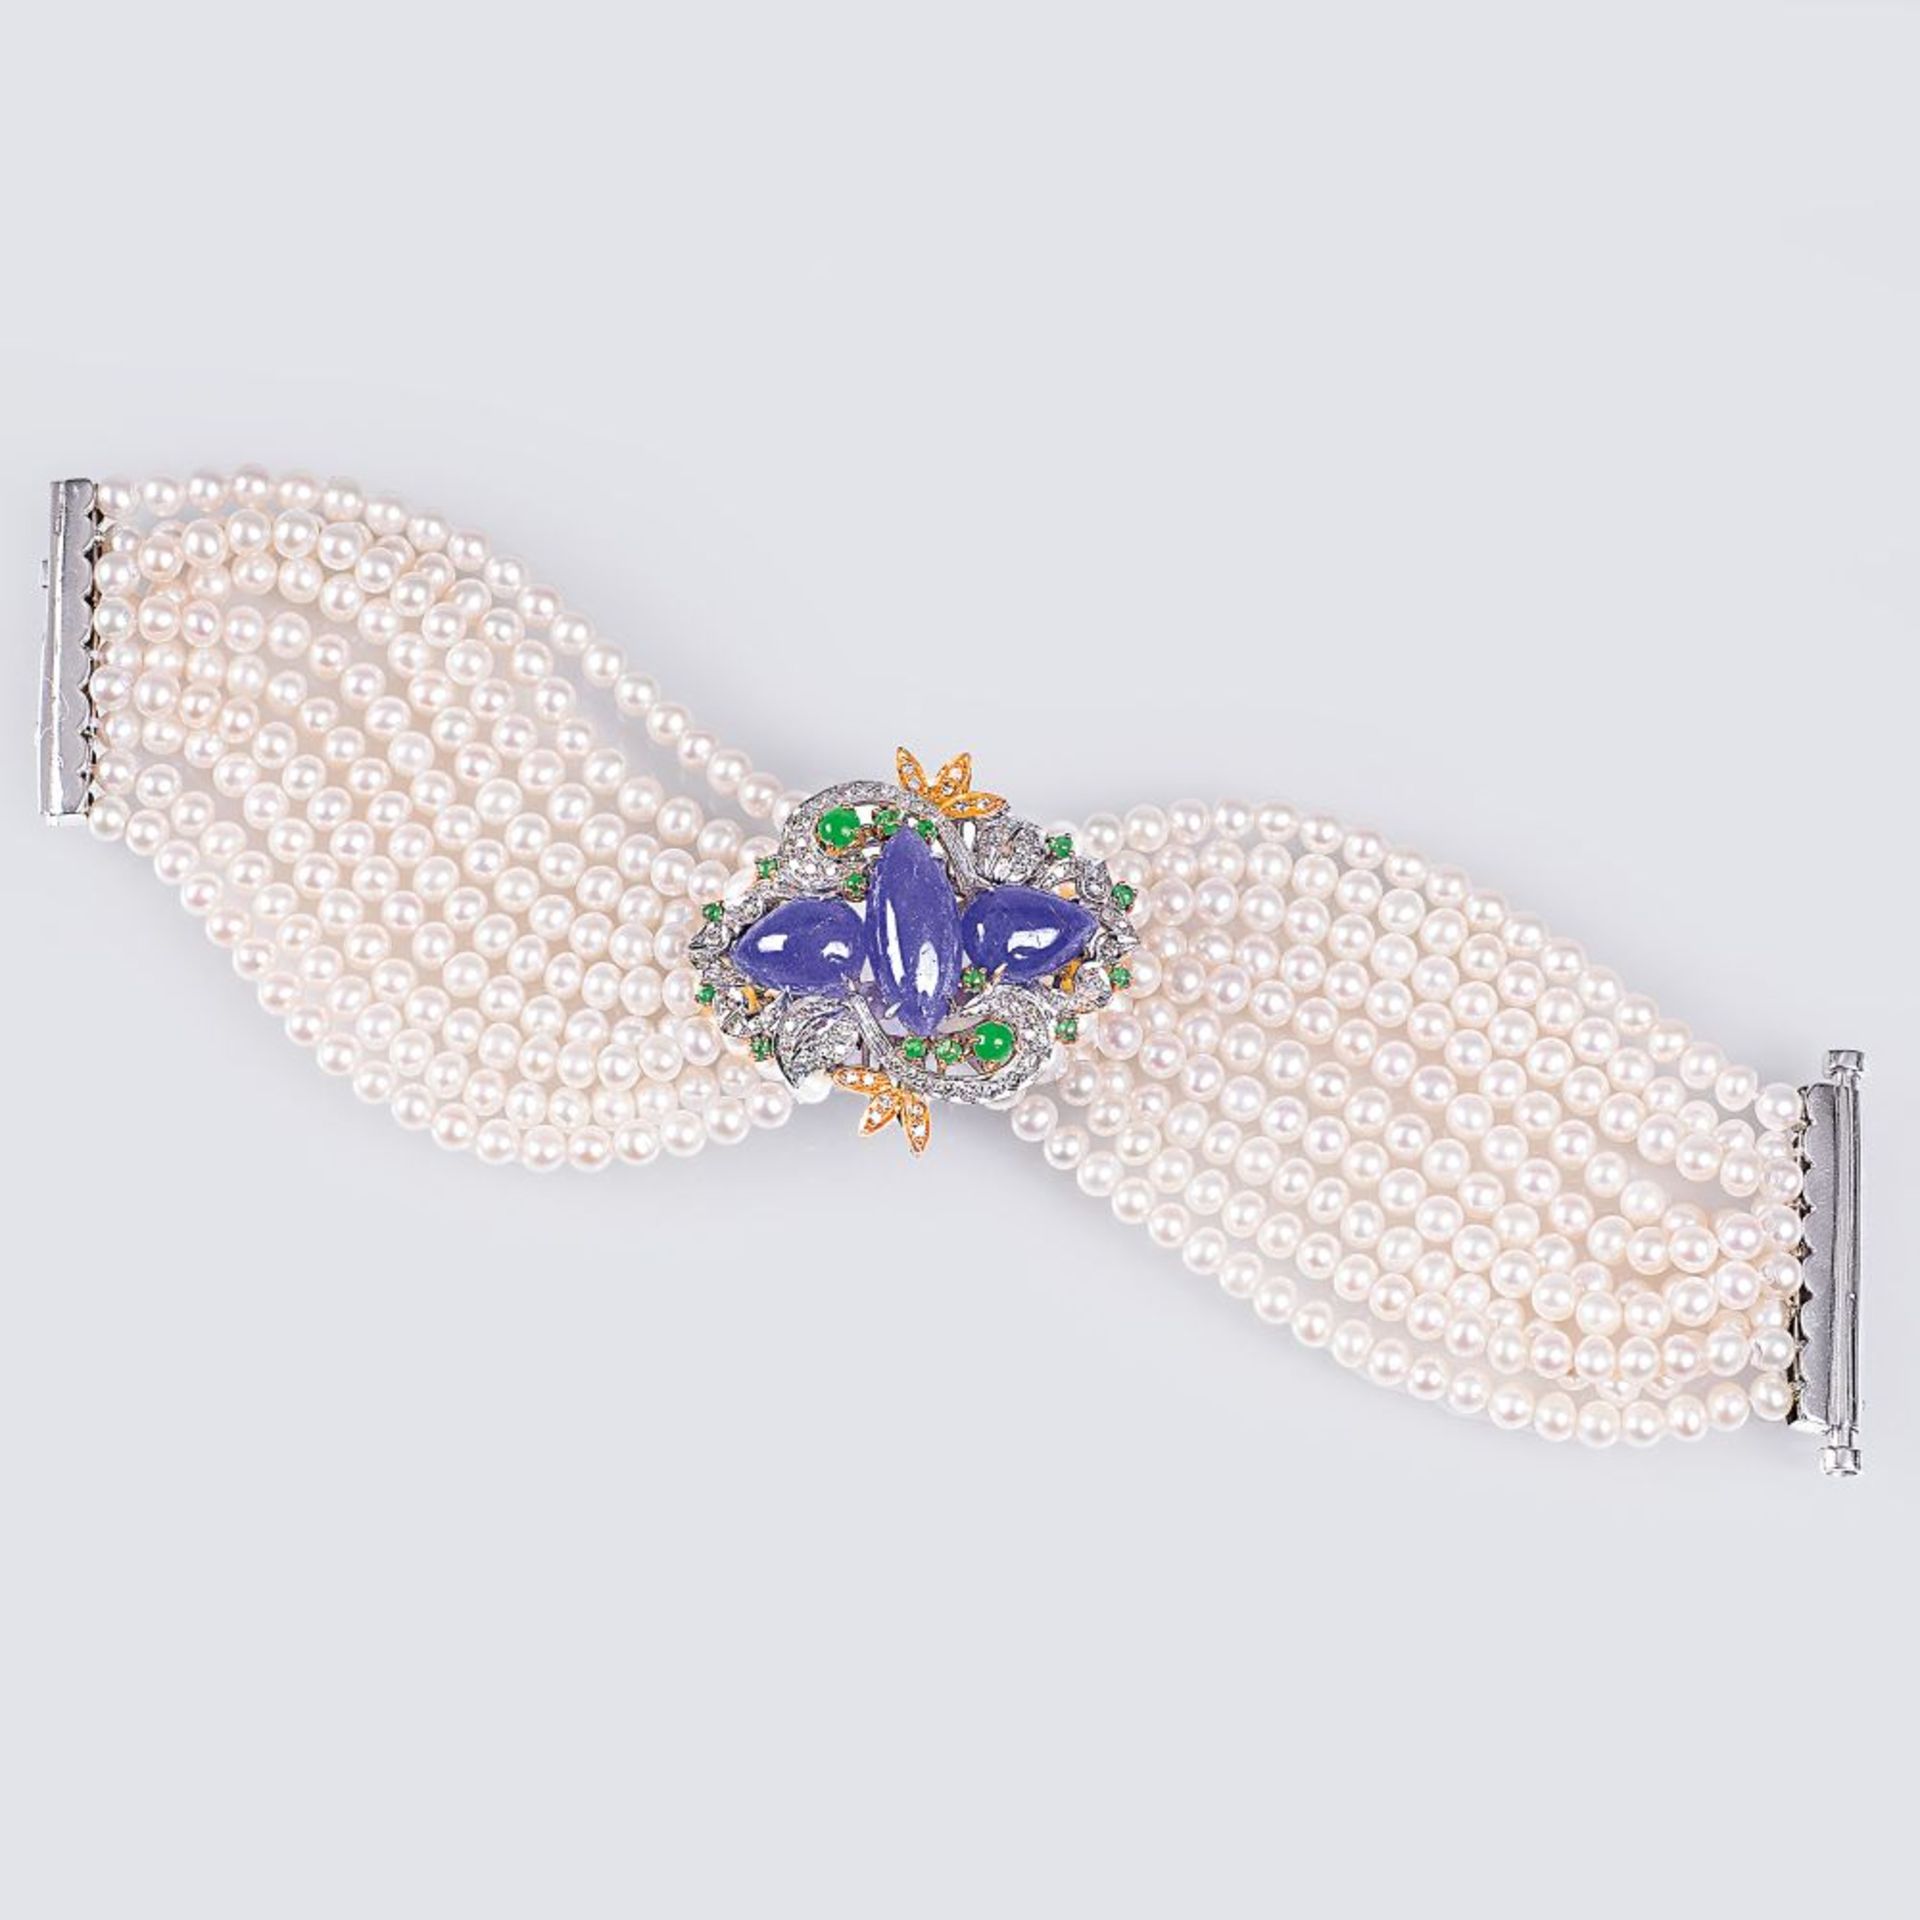 Perlen-Armband mit prachtvollem Edelstein-Besatz.